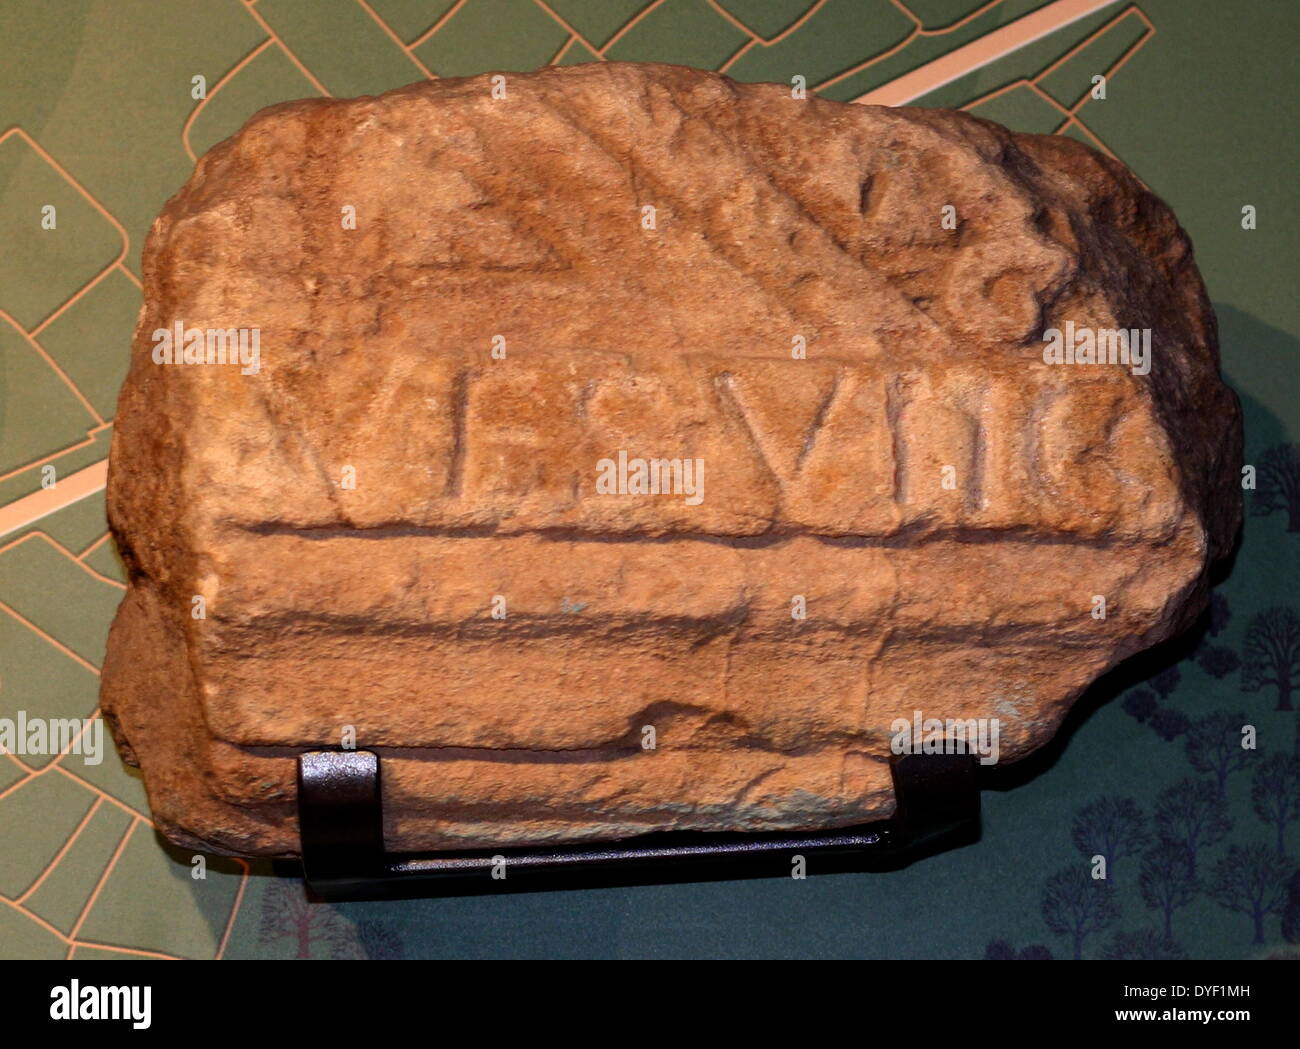 Un fragment de mur avec l'inscription du bains romains. La plus ancienne inscription trouvée, il lit "Dans le 7ème consulat de l'empereur Vespasien'. Cela aide à ce jour cette partie des bains à sept ans après il est devenu empereur en 69 AD. Banque D'Images